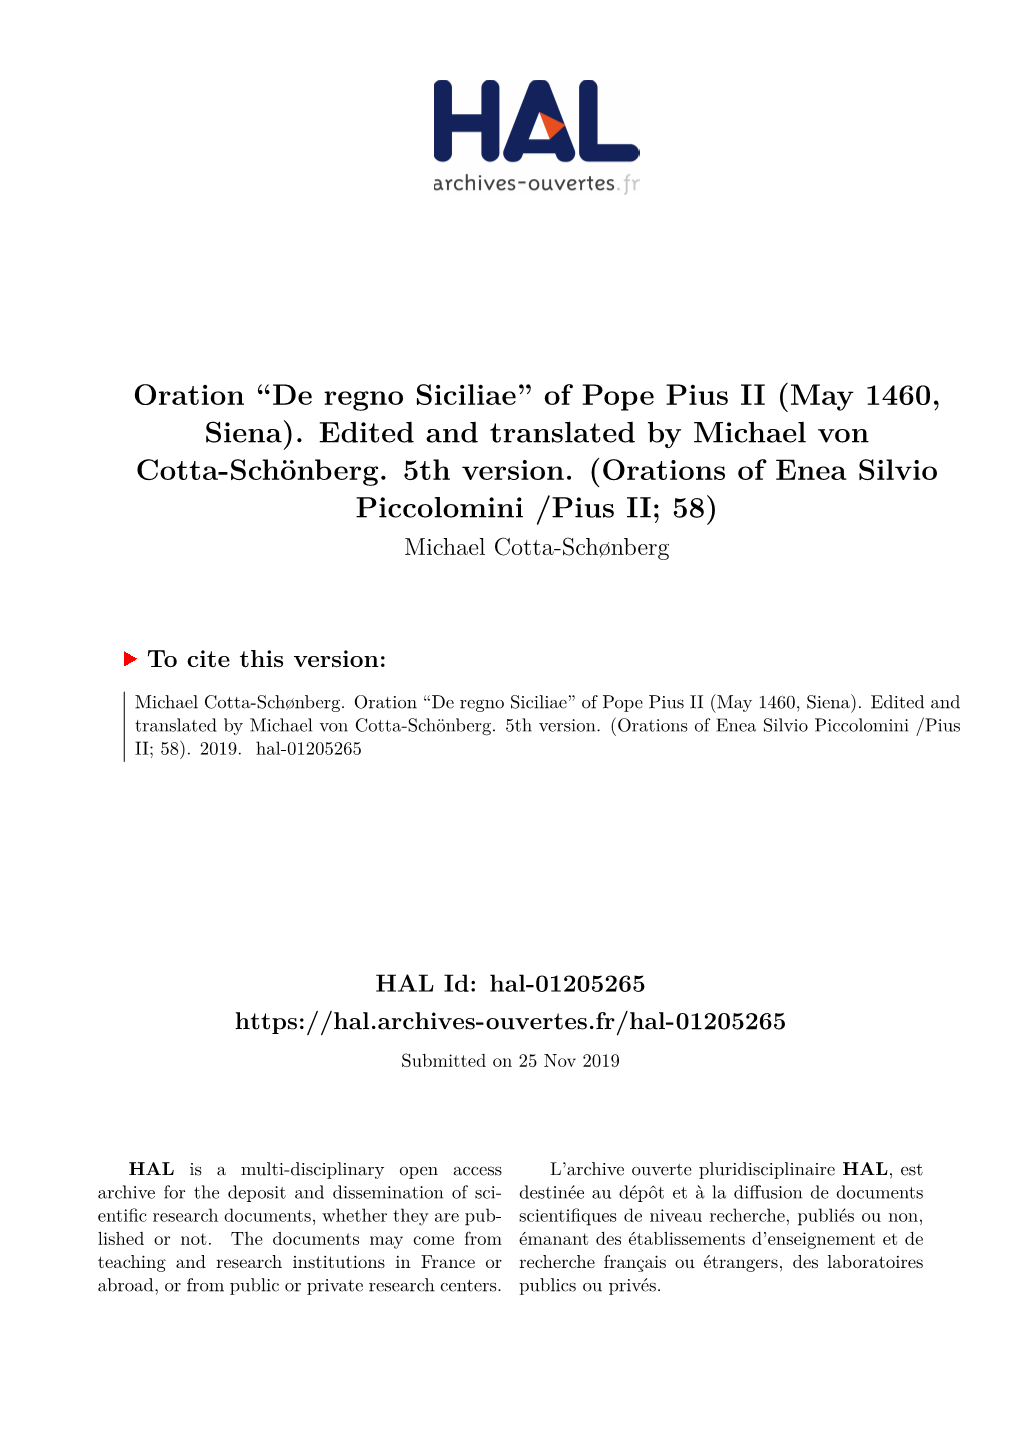 De Regno Siciliae” of Pope Pius II (May 1460, Siena)